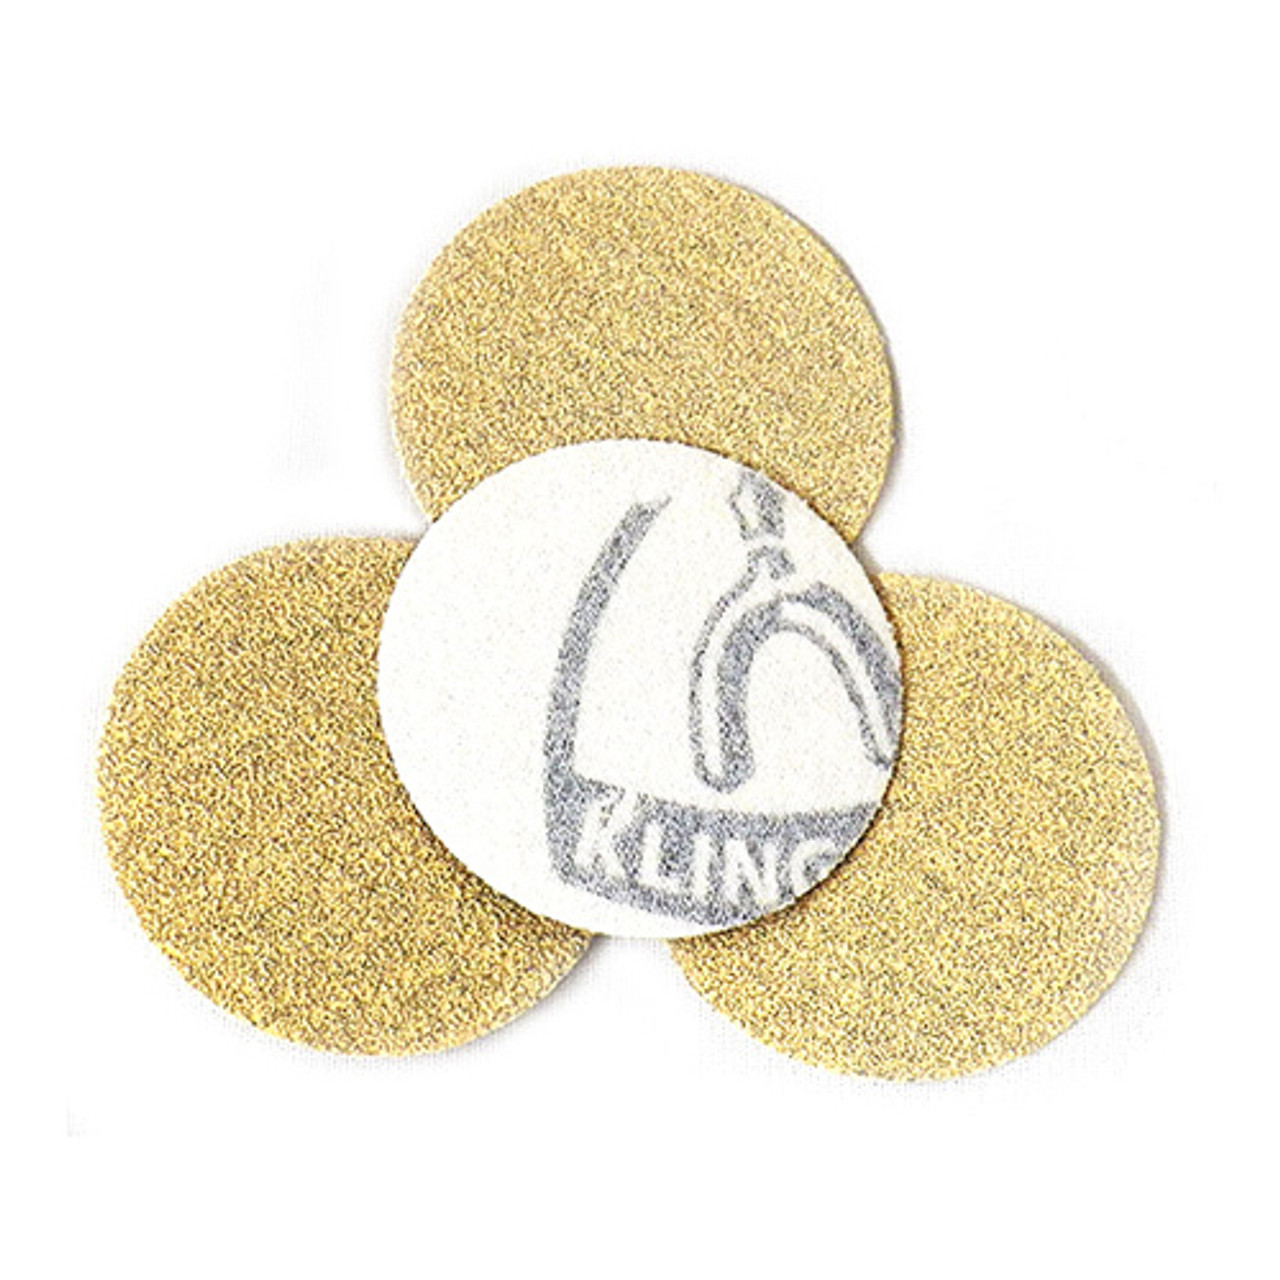 Klingspor Abrasives Stearated Aluminum Oxide, 3" Hook & Loop Discs, 120 Grit, 50pk